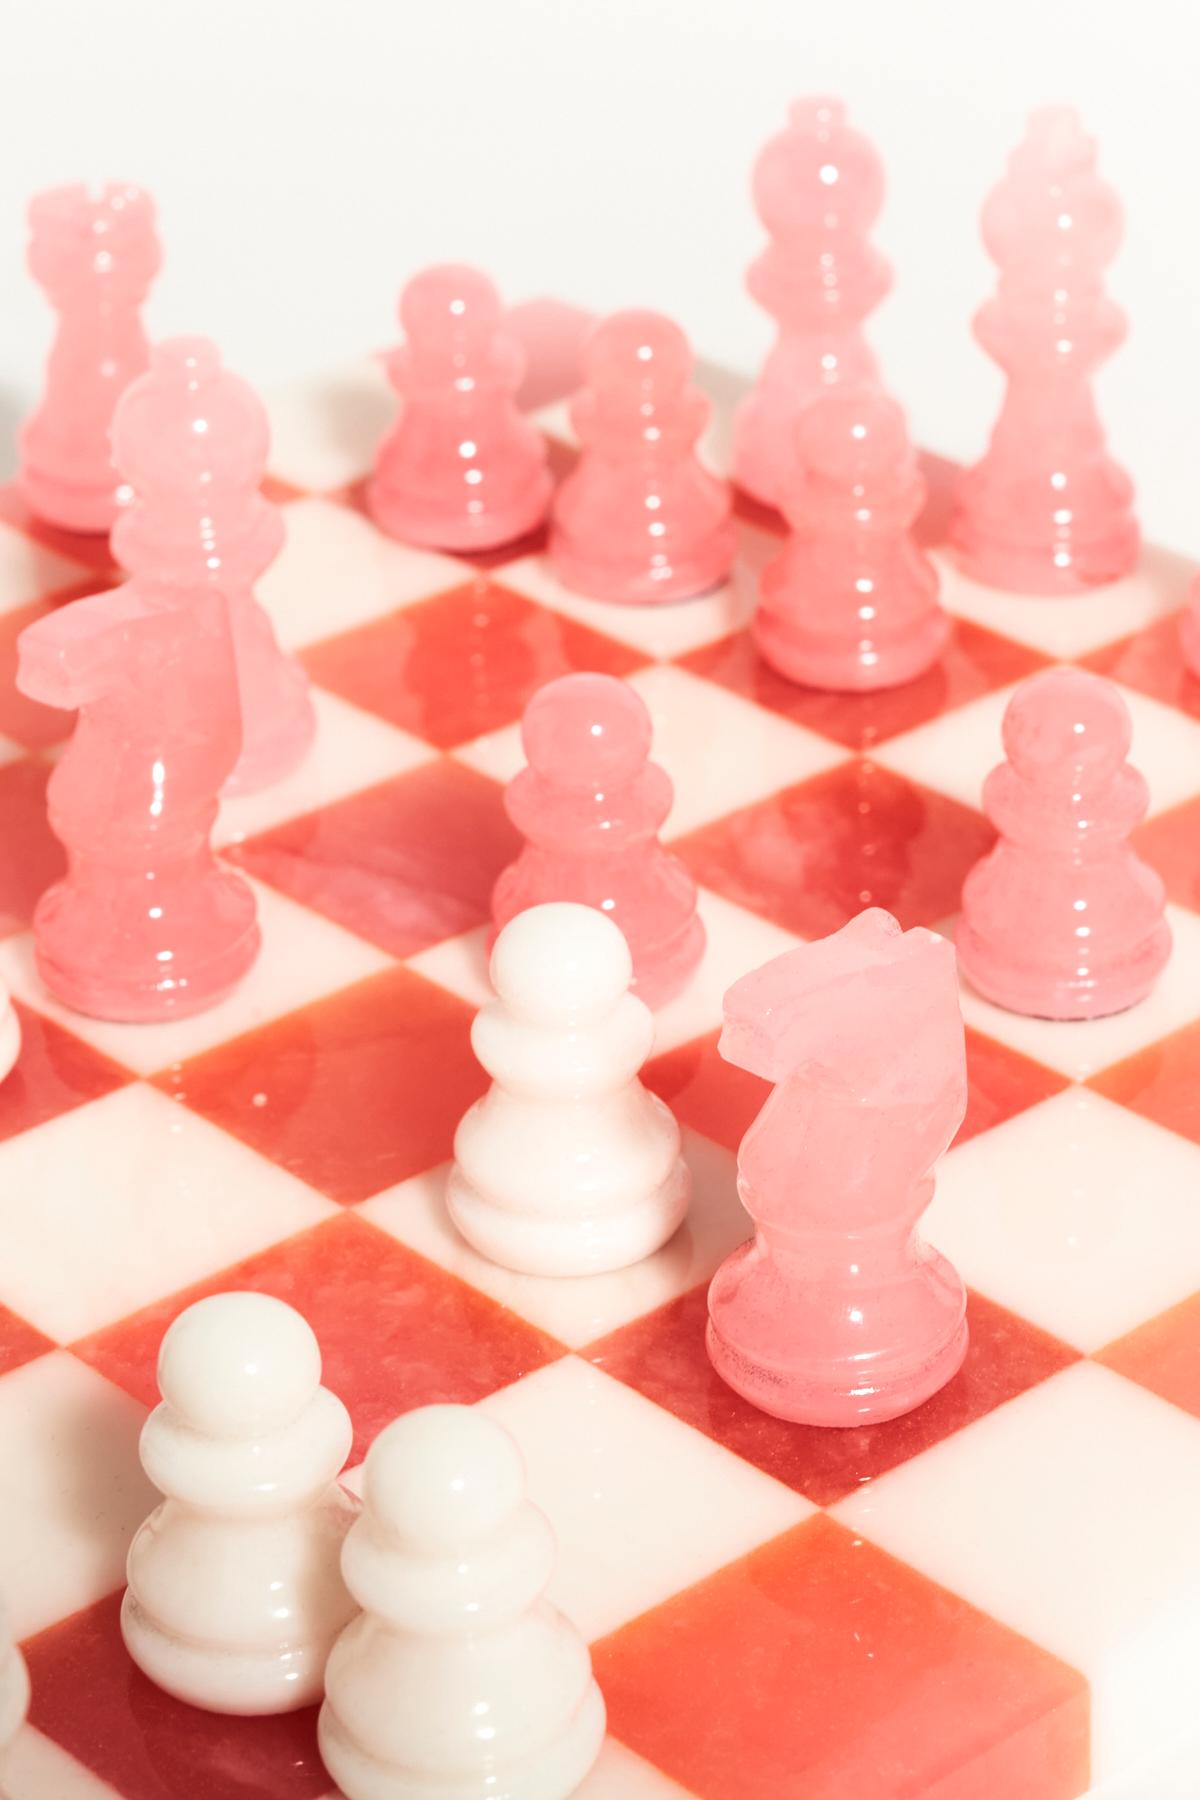 pink chess set